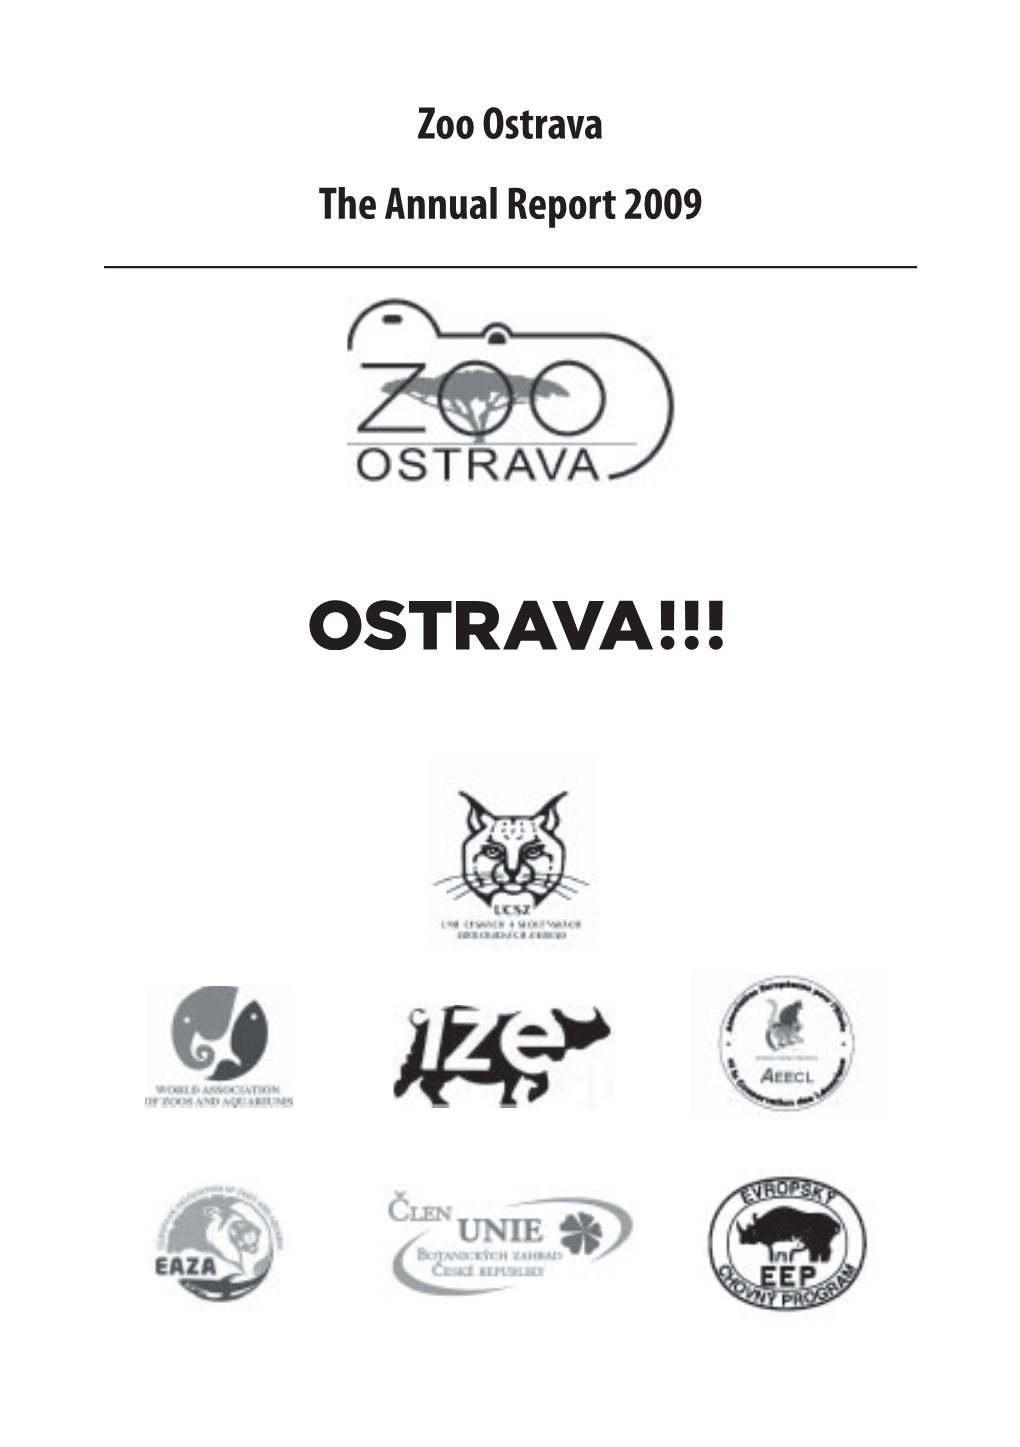 Zoo Ostrava the Annual Report 2009